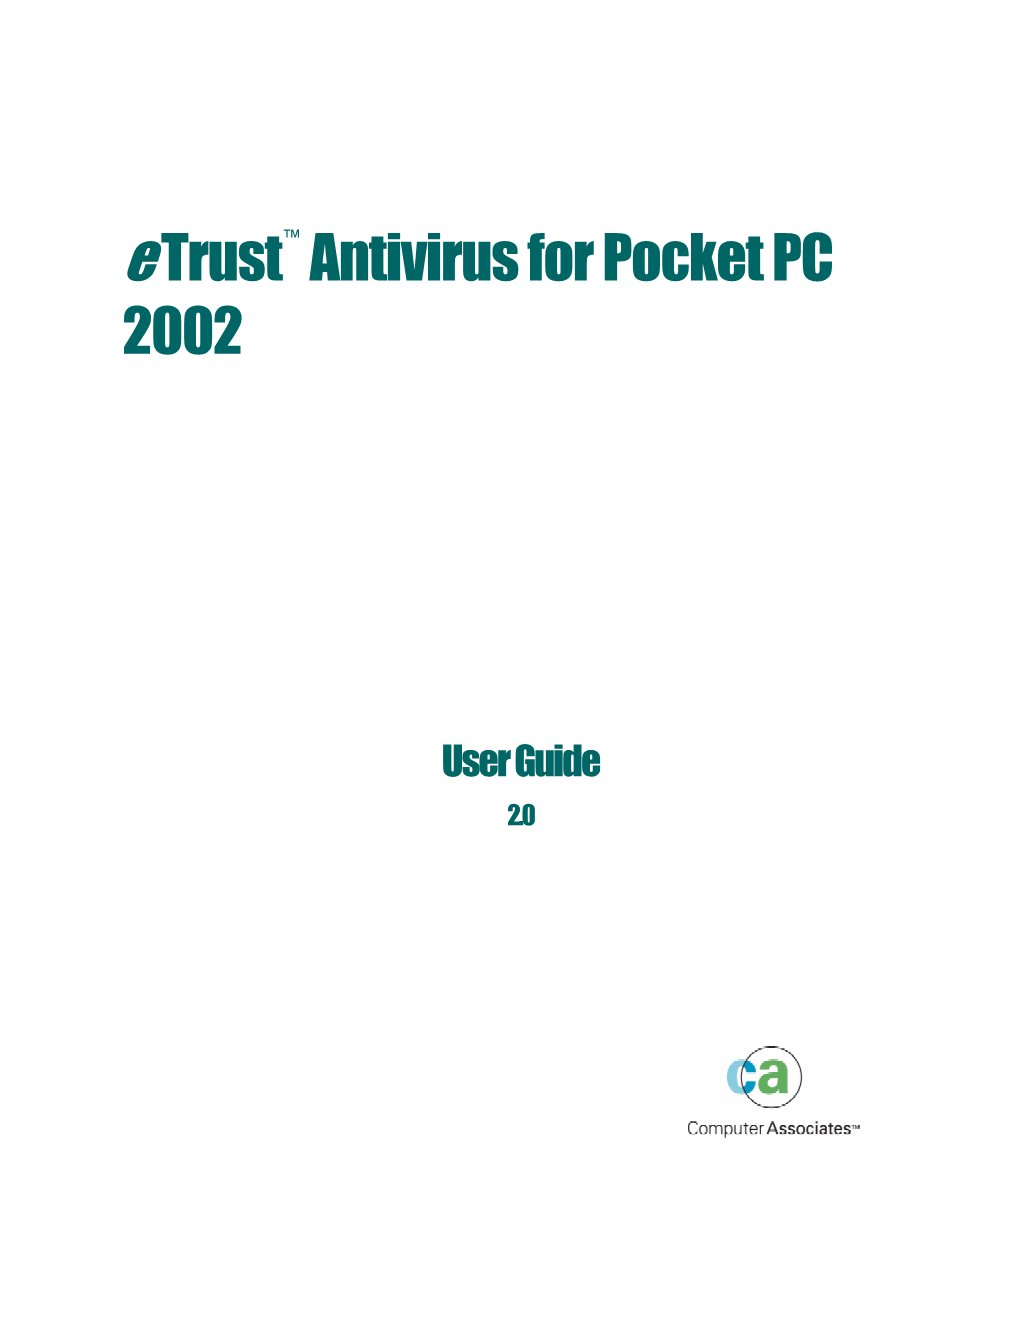 Etrust Antivirus for Pocket PC 2002 User Guide